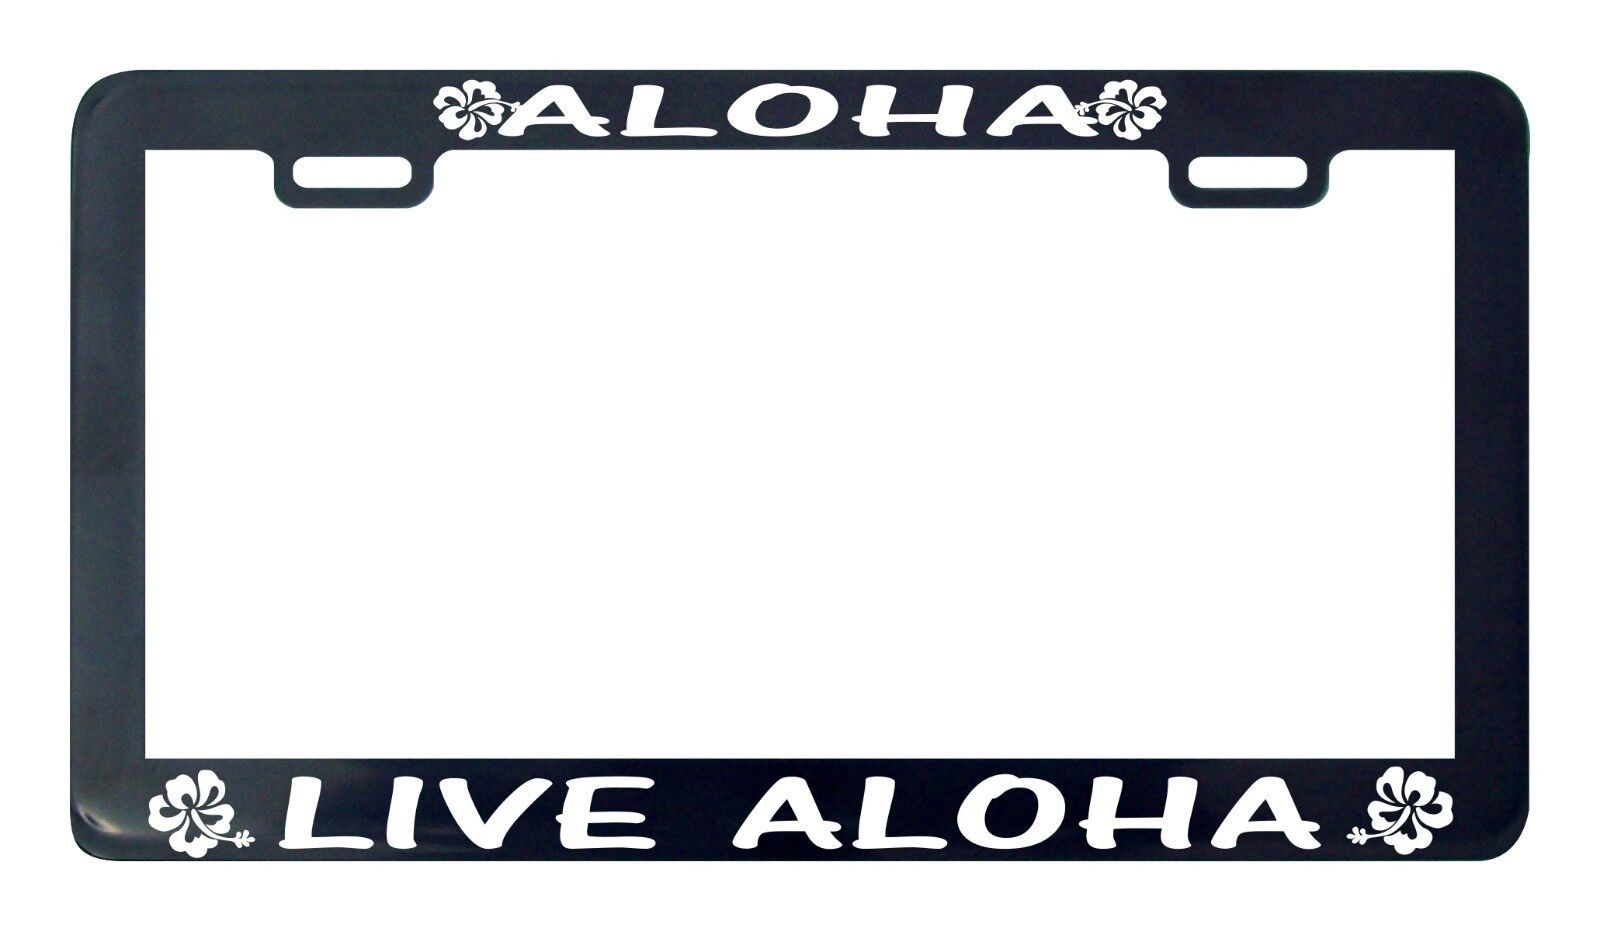 Primary image for Aloha Live Aloha License Plate Holder Hawaii Oahu-
show original title

Origi...